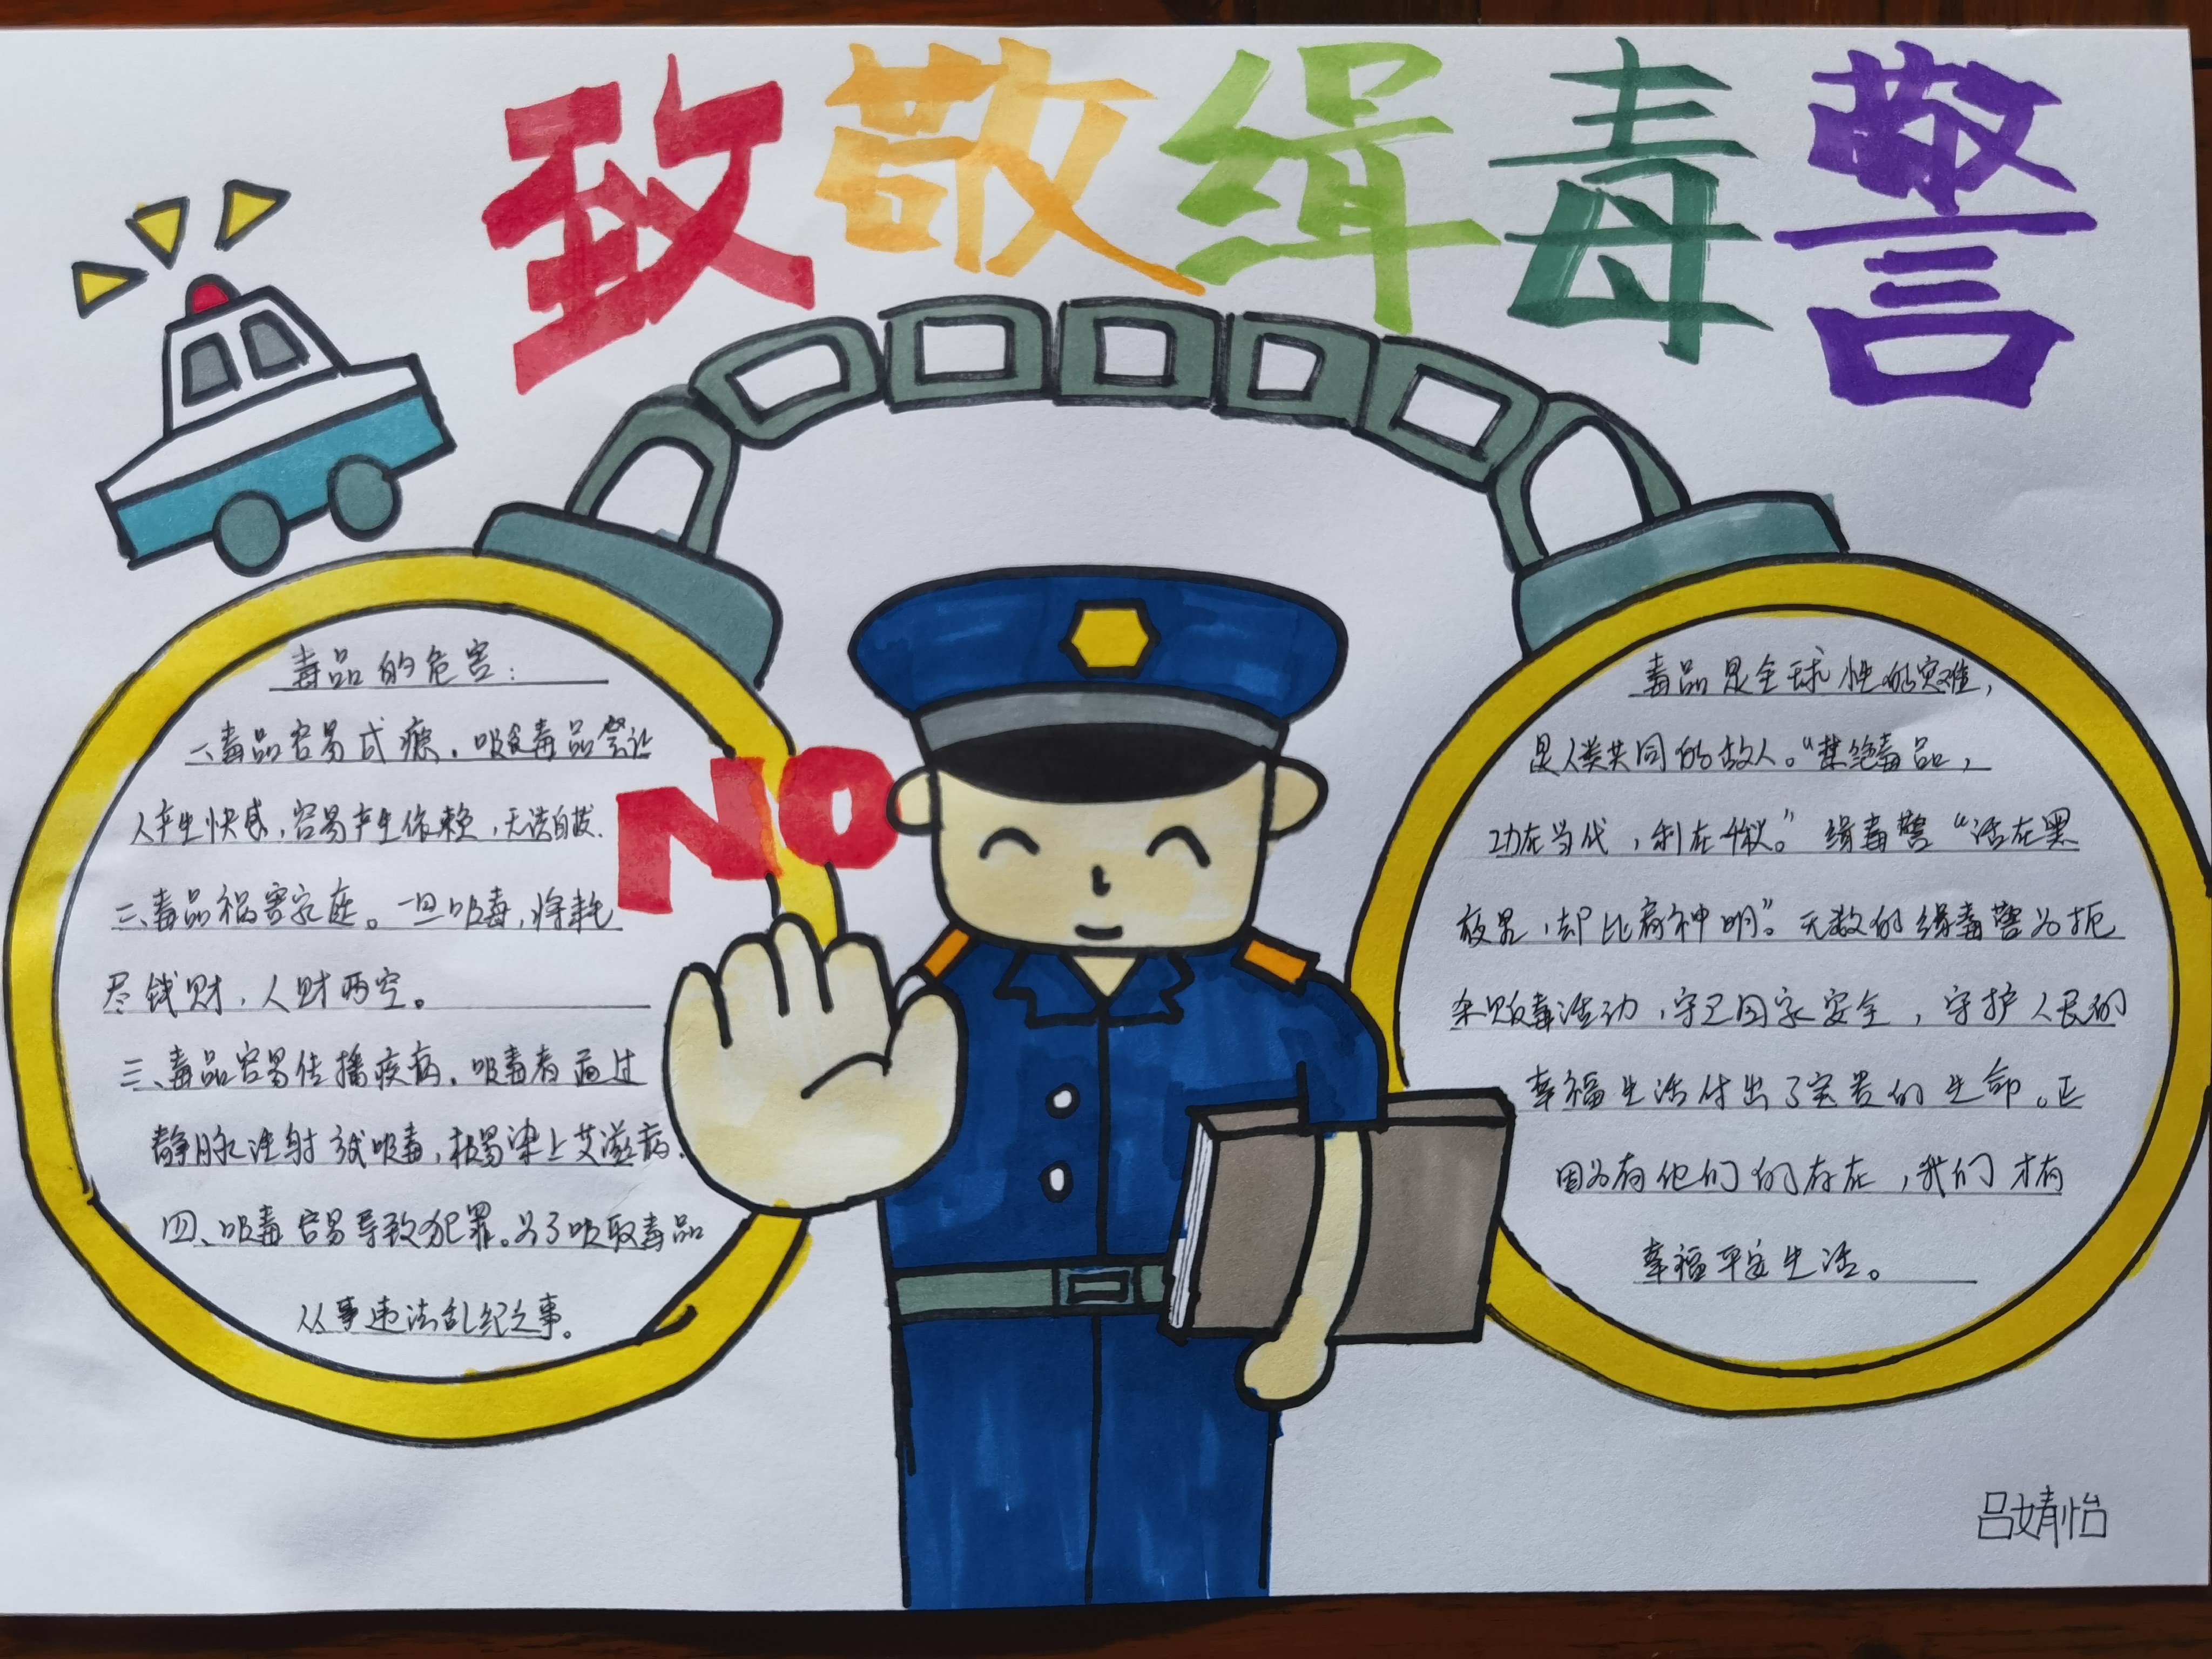 黄埔区文冲街1·10警察节,致敬缉毒警开展线上画报活动